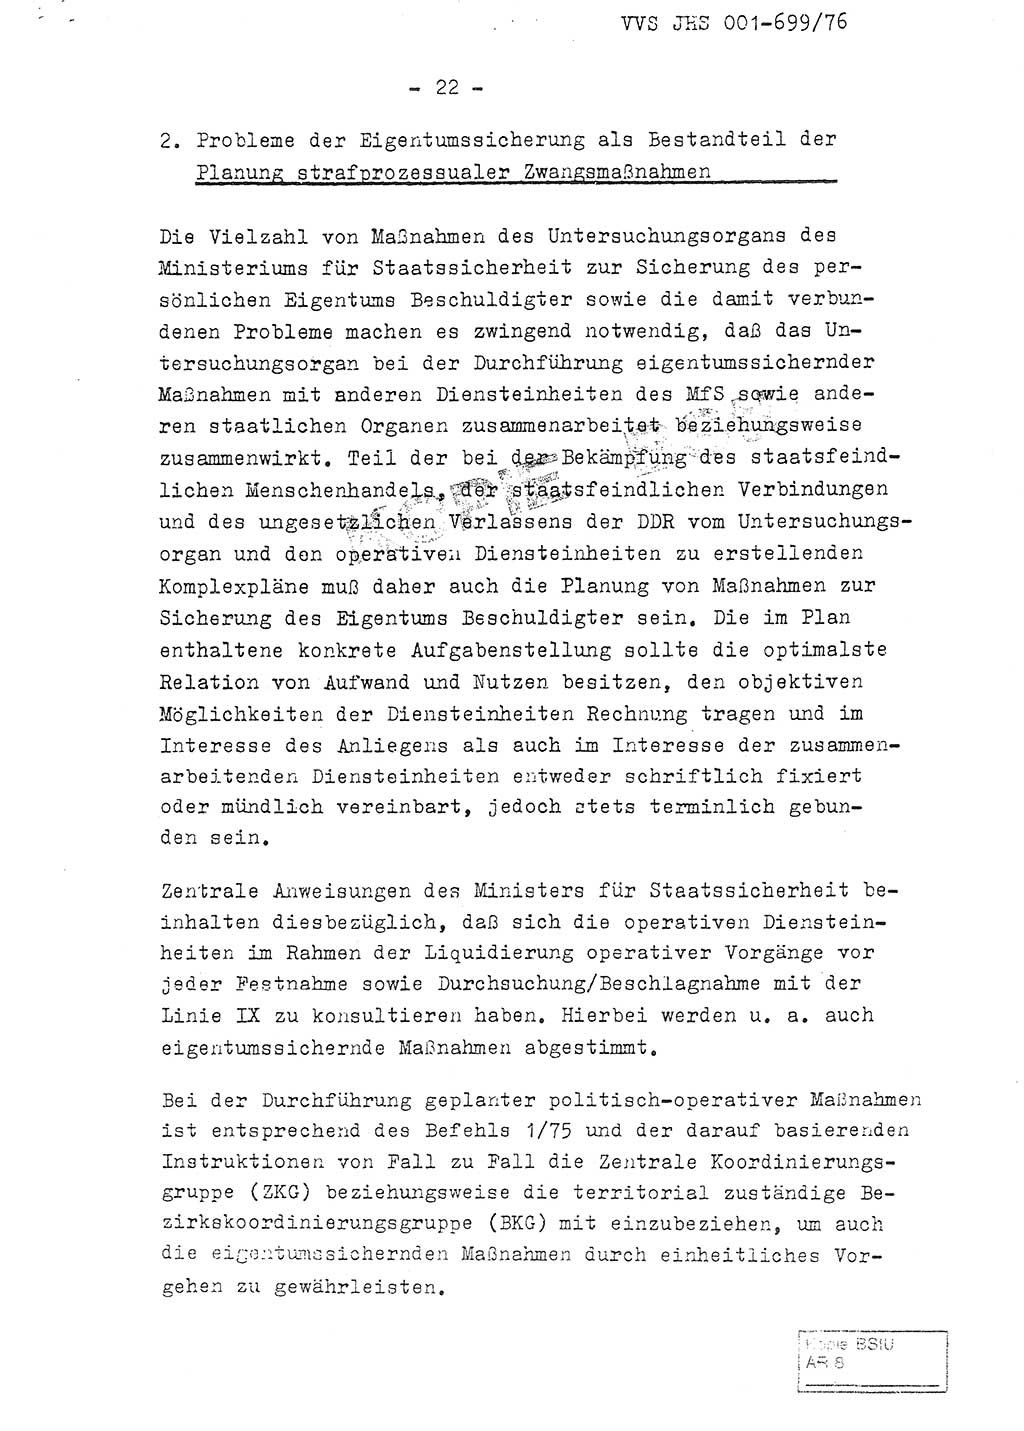 Fachschulabschlußarbeit Leutnant Volkmar Taubert (HA Ⅸ/9), Leutnant Axel Naumann (HA Ⅸ/9), Unterleutnat Detlef Debski (HA Ⅸ/9), Ministerium für Staatssicherheit (MfS) [Deutsche Demokratische Republik (DDR)], Juristische Hochschule (JHS), Vertrauliche Verschlußsache (VVS) 001-699/76, Potsdam 1976, Seite 22 (FS-Abschl.-Arb. MfS DDR JHS VVS 001-699/76 1976, S. 22)